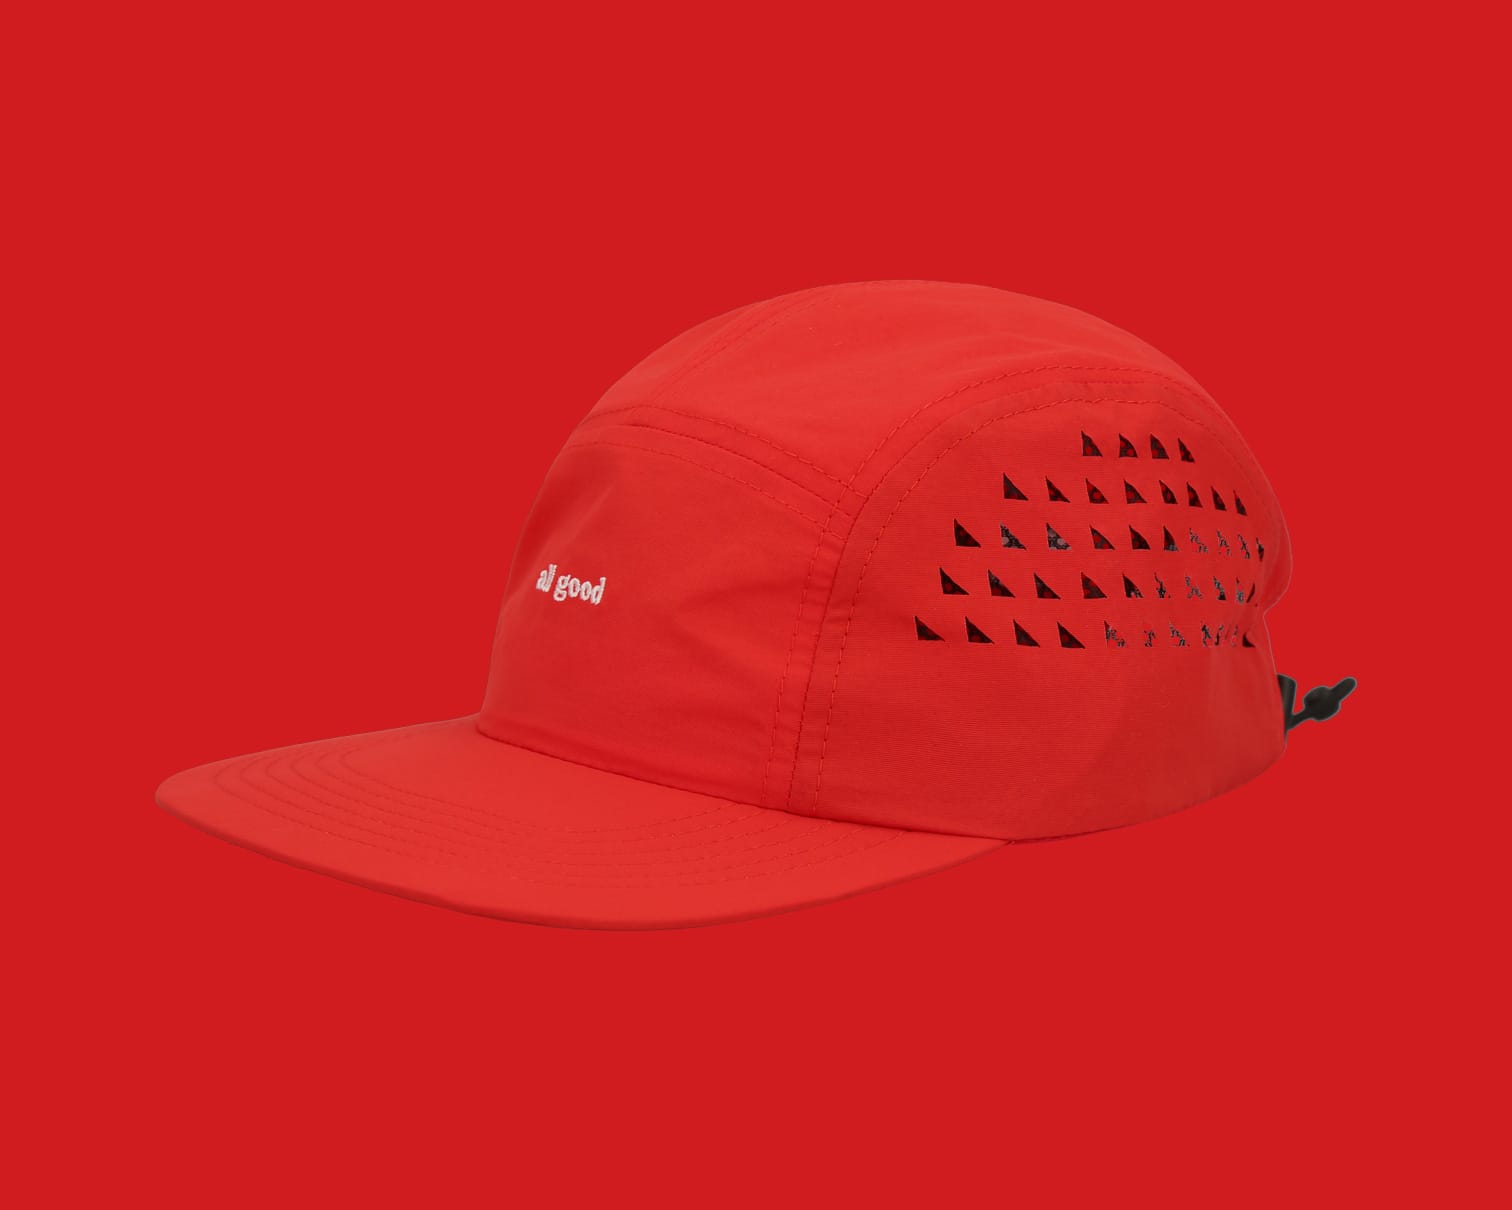 all good tech cap, red